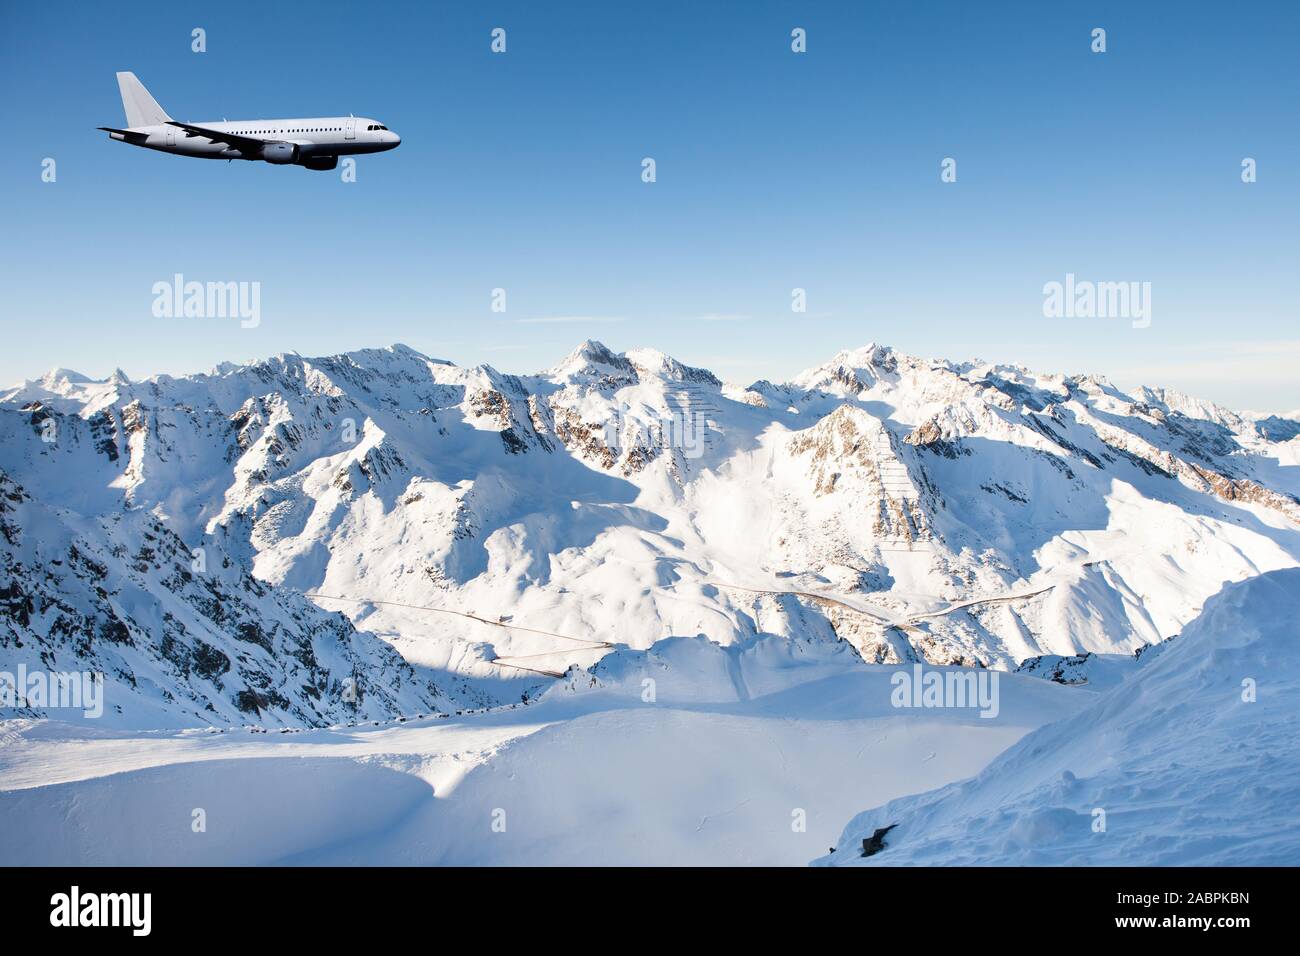 Belle vue de vol d'un avion au ciel clair à l'encontre de montagnes aux sommets enneigés à Sölden Banque D'Images